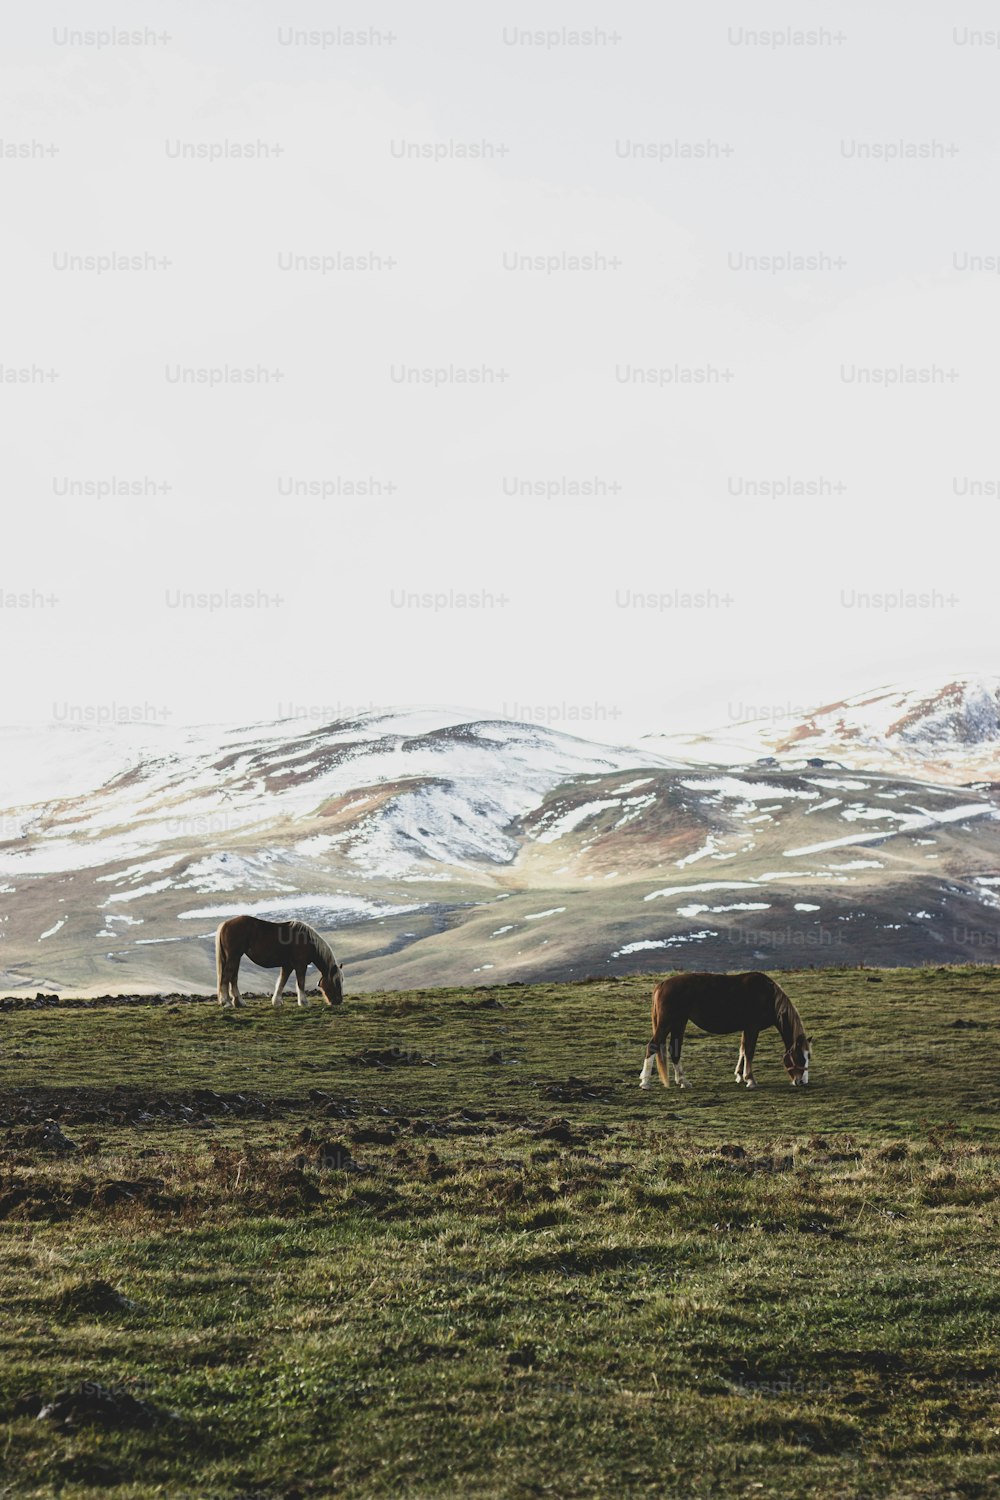 Zwei Pferde grasen auf einem Feld mit Bergen im Hintergrund